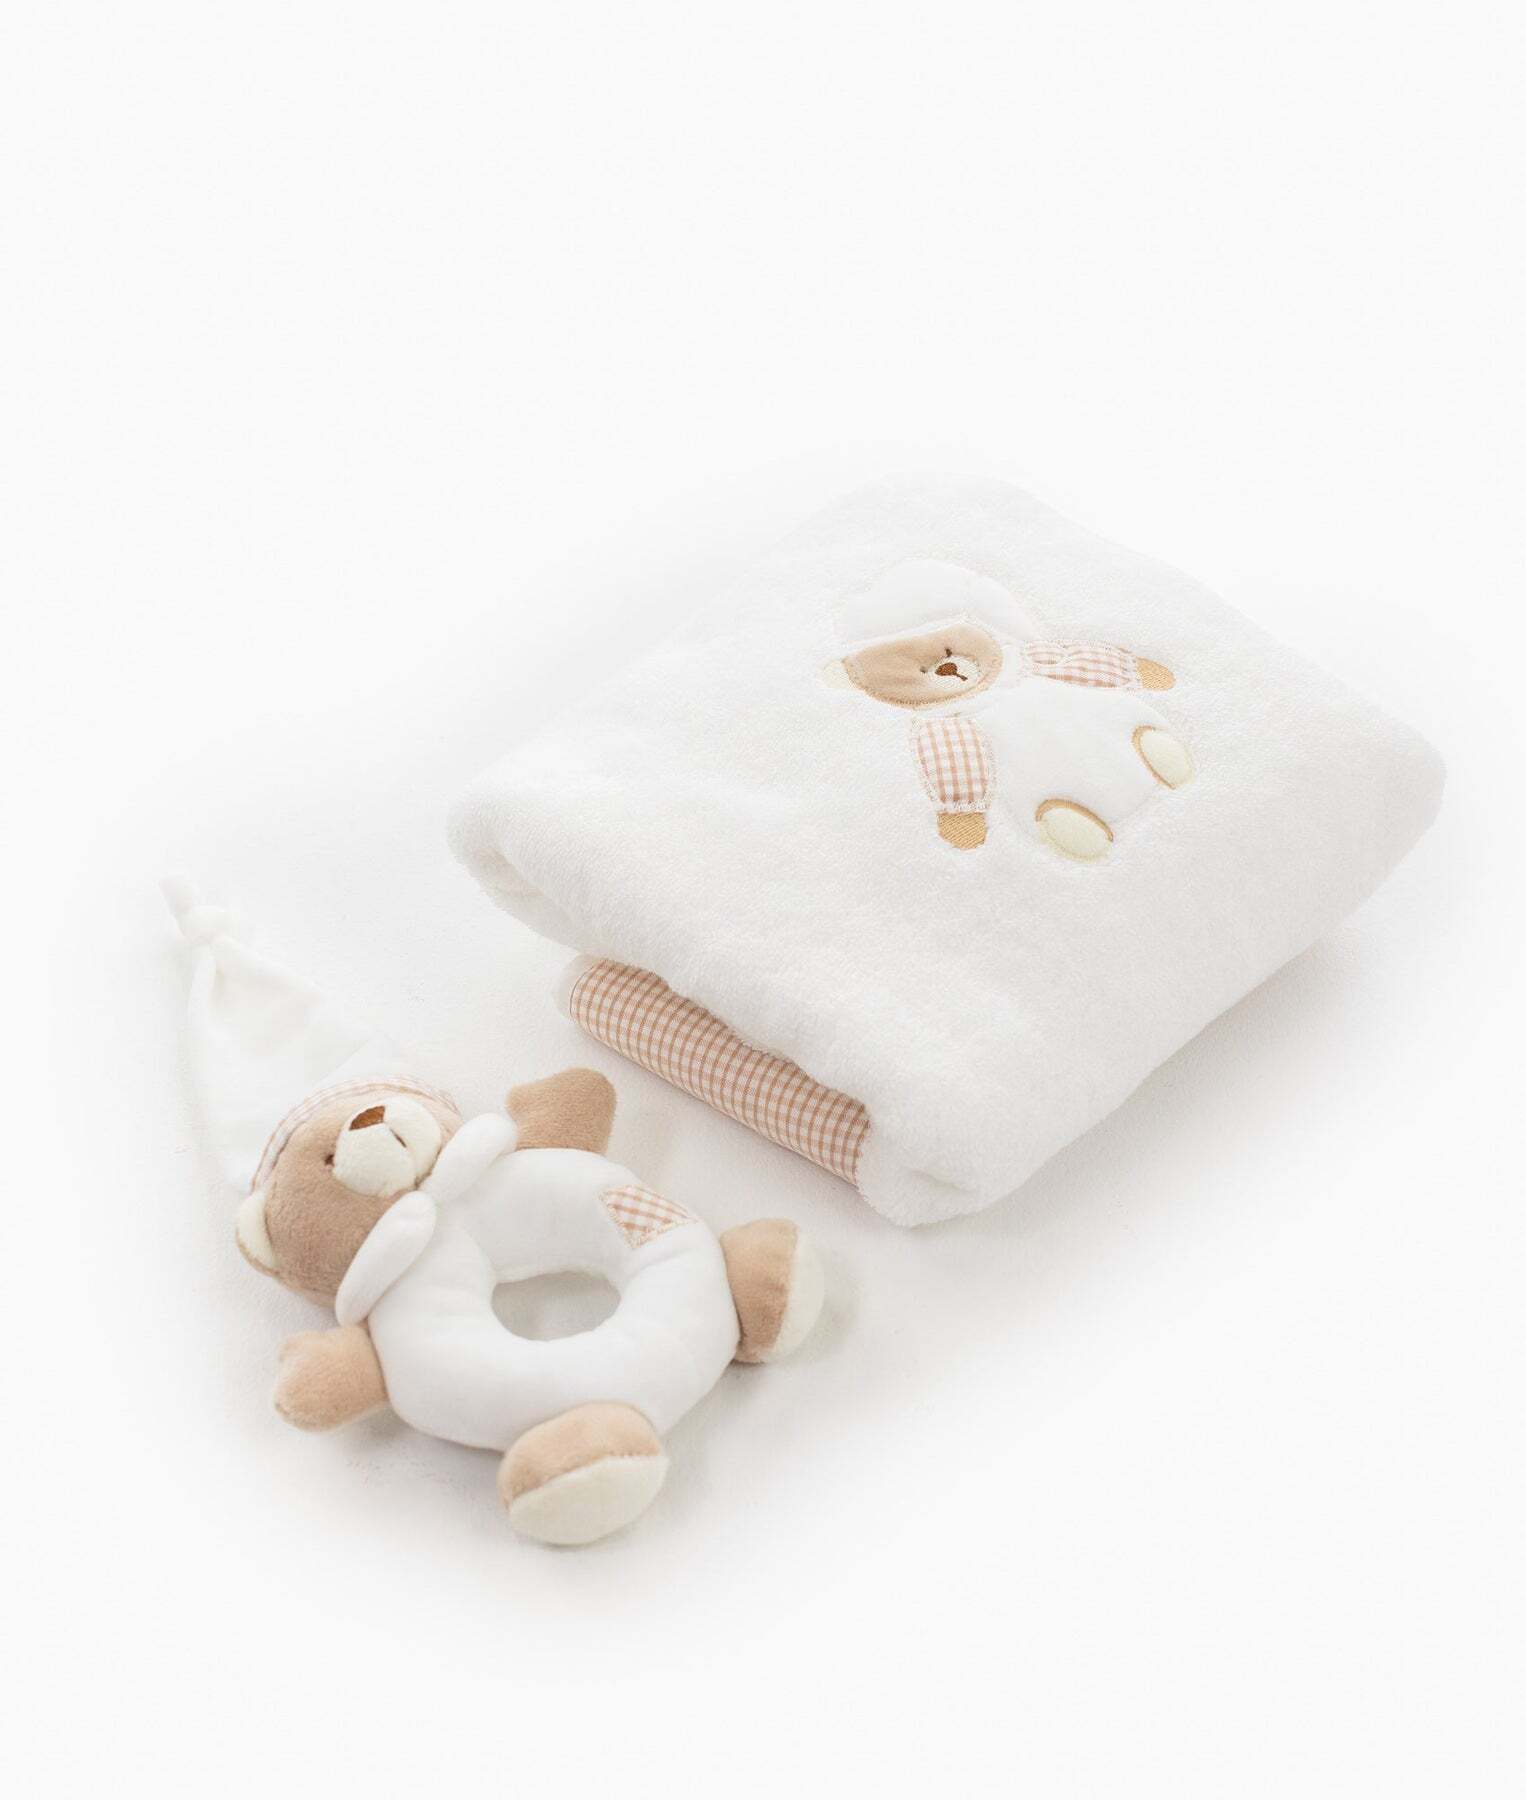 bear-towel-rattle-set-beige-203_1800x1800